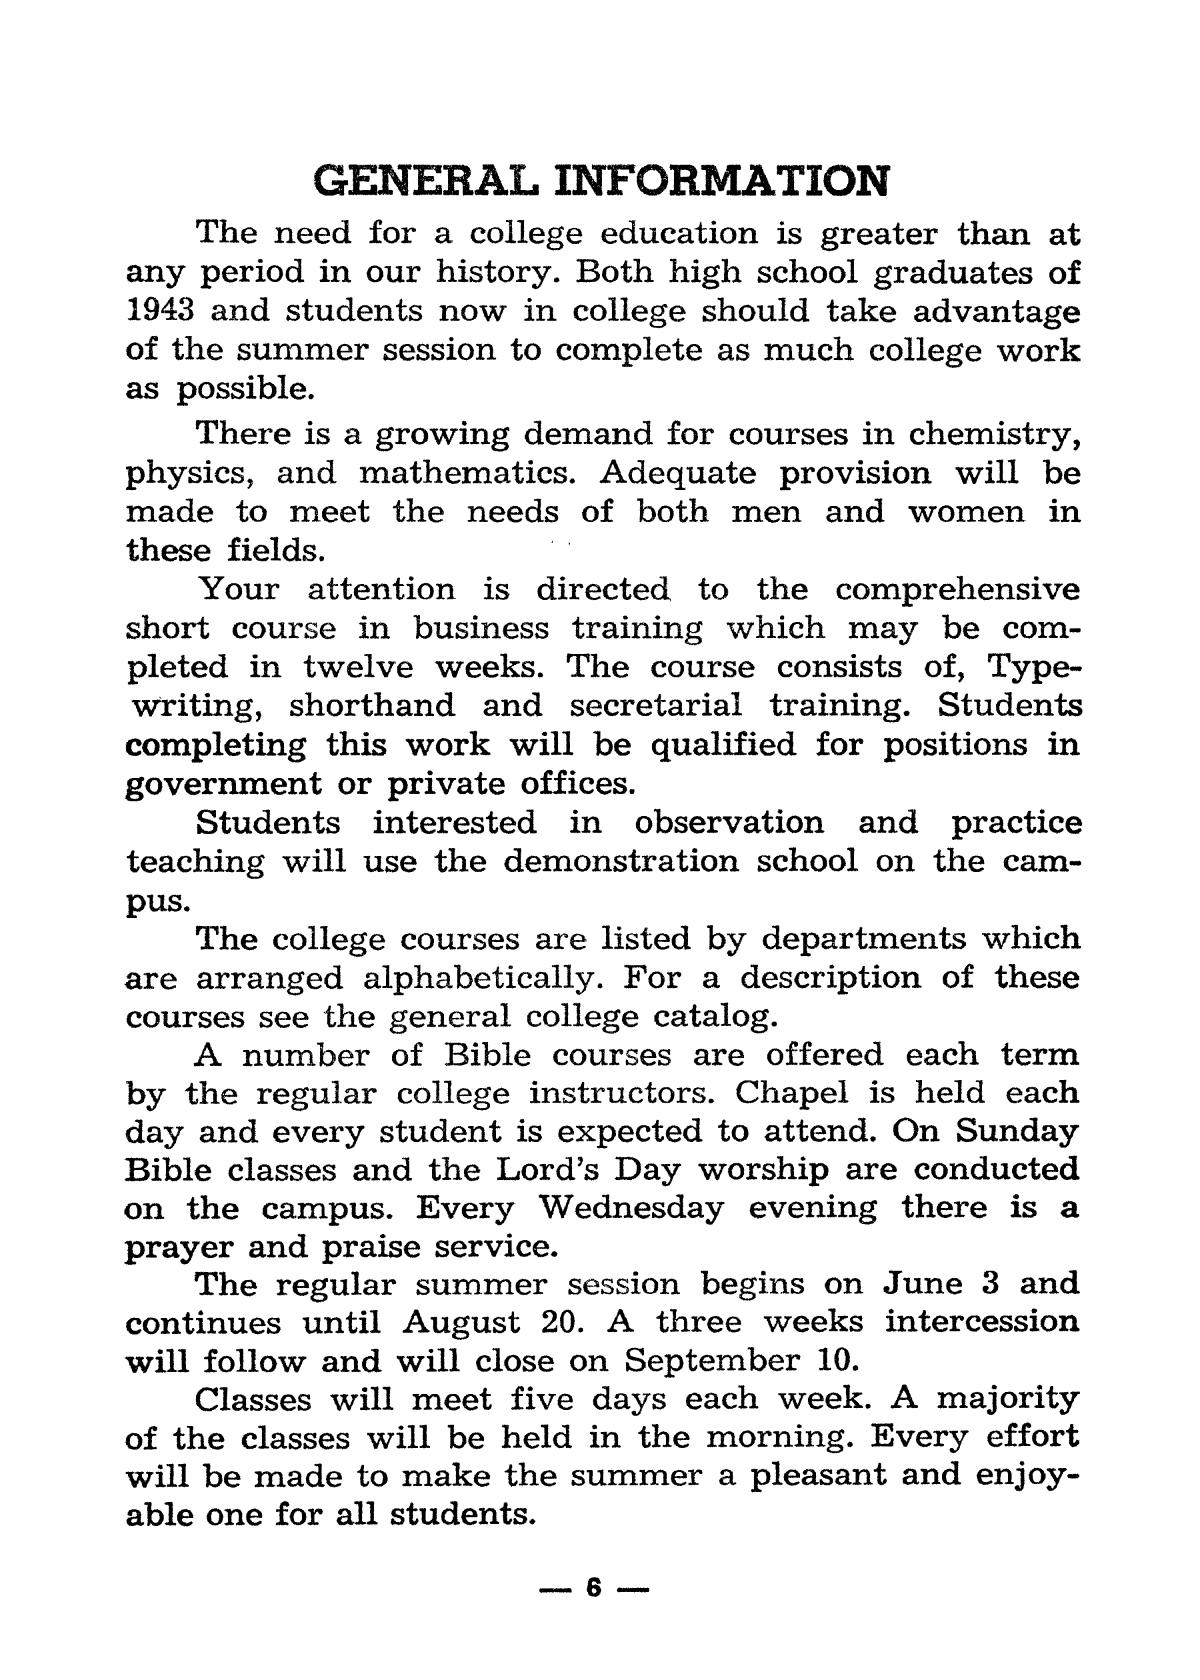 Catalog of Abilene Christian College, 1943
                                                
                                                    6
                                                